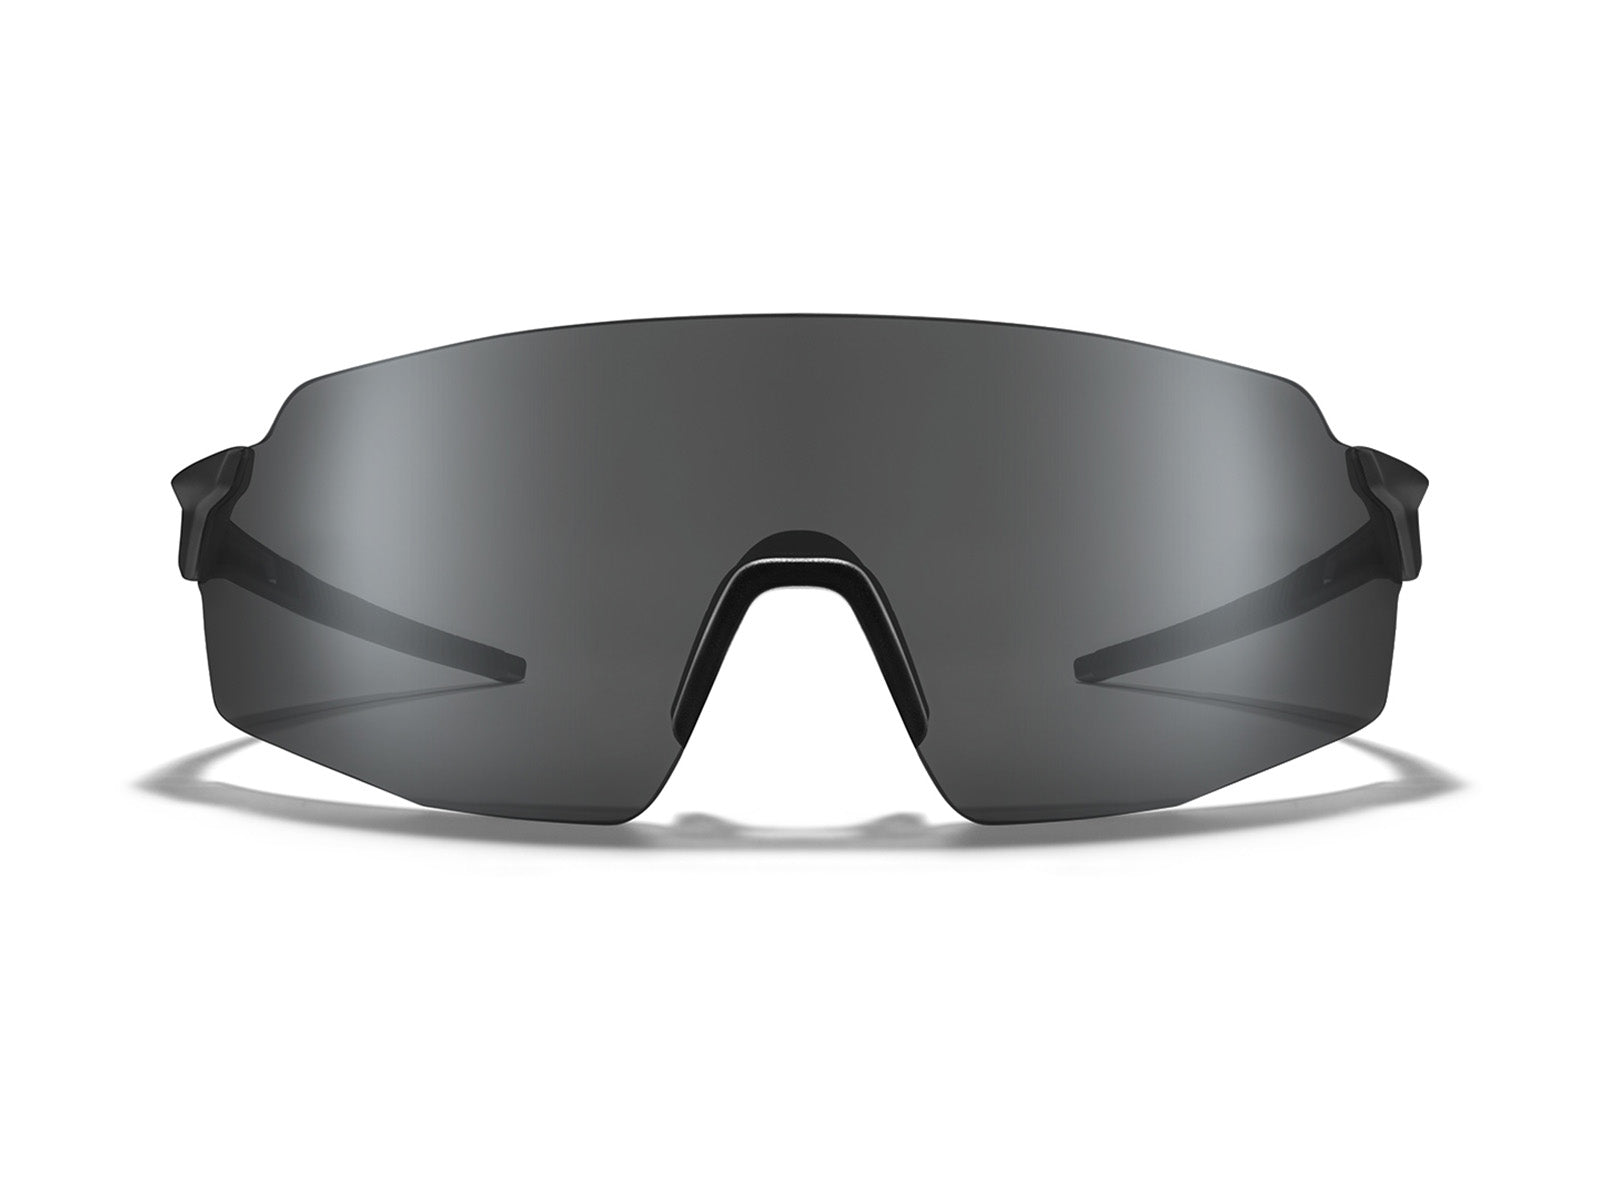 Roka SL-1x Ultralight Rimless Sunglasses